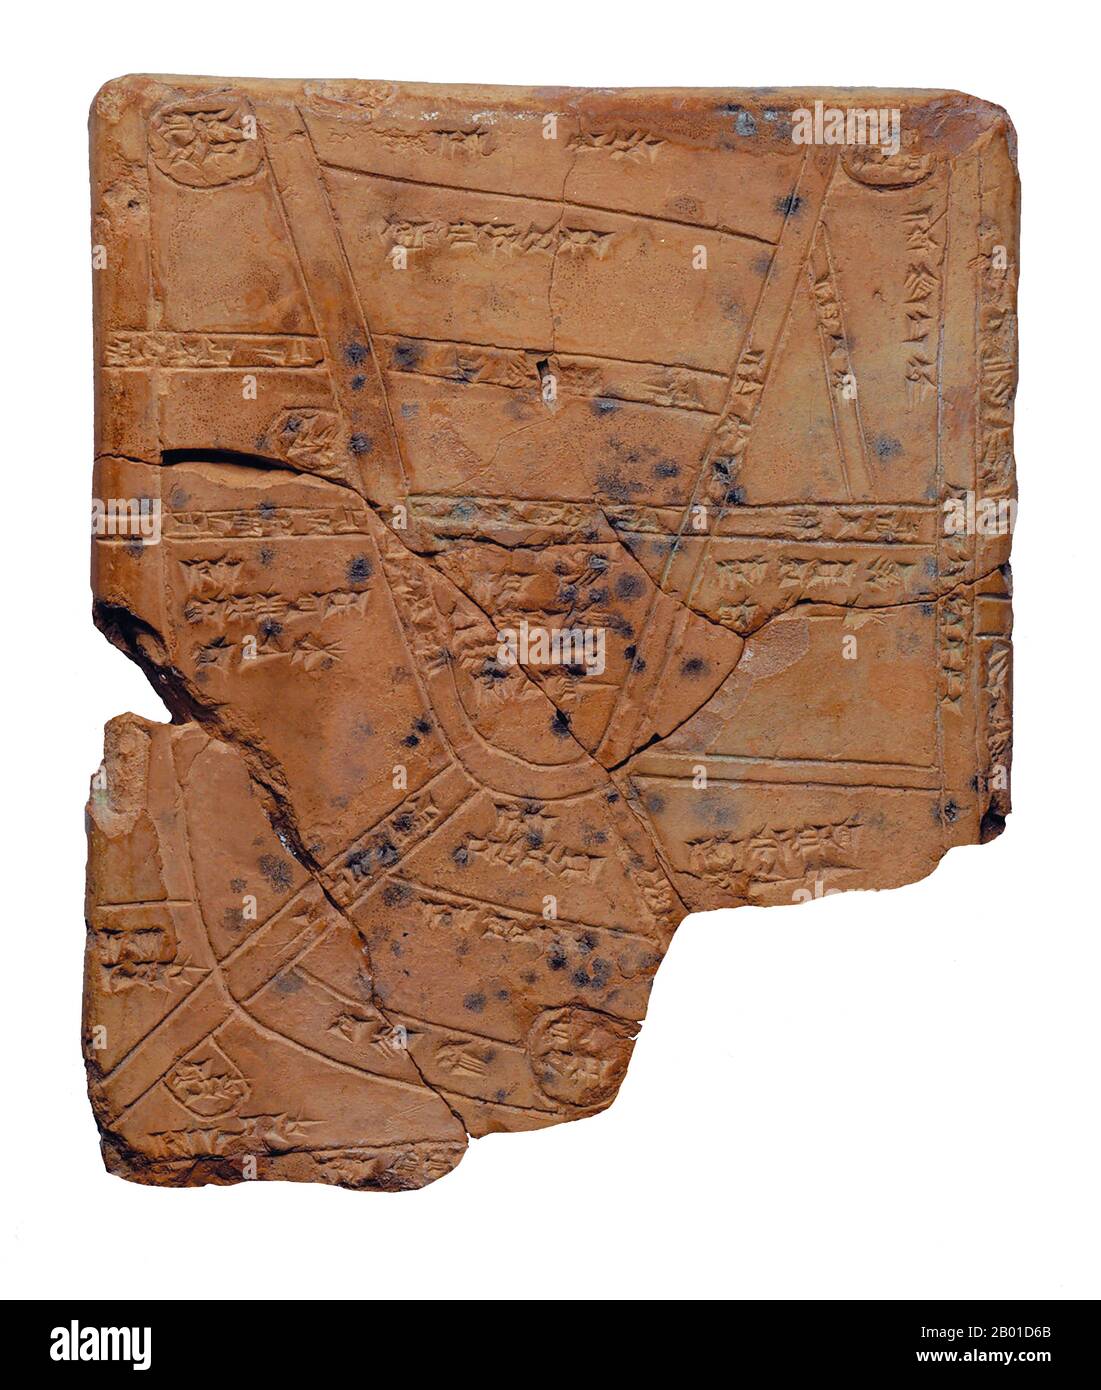 Iraq: Mapa de la ciudad de Nippur incisado en una tablilla de arcilla cocida, c. Siglo 14th AEC. Esta antigua tablilla de arcilla data del siglo 14th-13th AEC, y en ella está inscrito un mapa de la campiña alrededor de la ciudad mesopotámica de Nippur, situada en el centro de la llanura aluvial de Mesopotamia meridional, cerca de la moderna ciudad de Diwaniyah. La inscripción en la tablilla es en cuneiforma. Es posible que sea el mapa de la ciudad más antiguo del mundo. Foto de stock